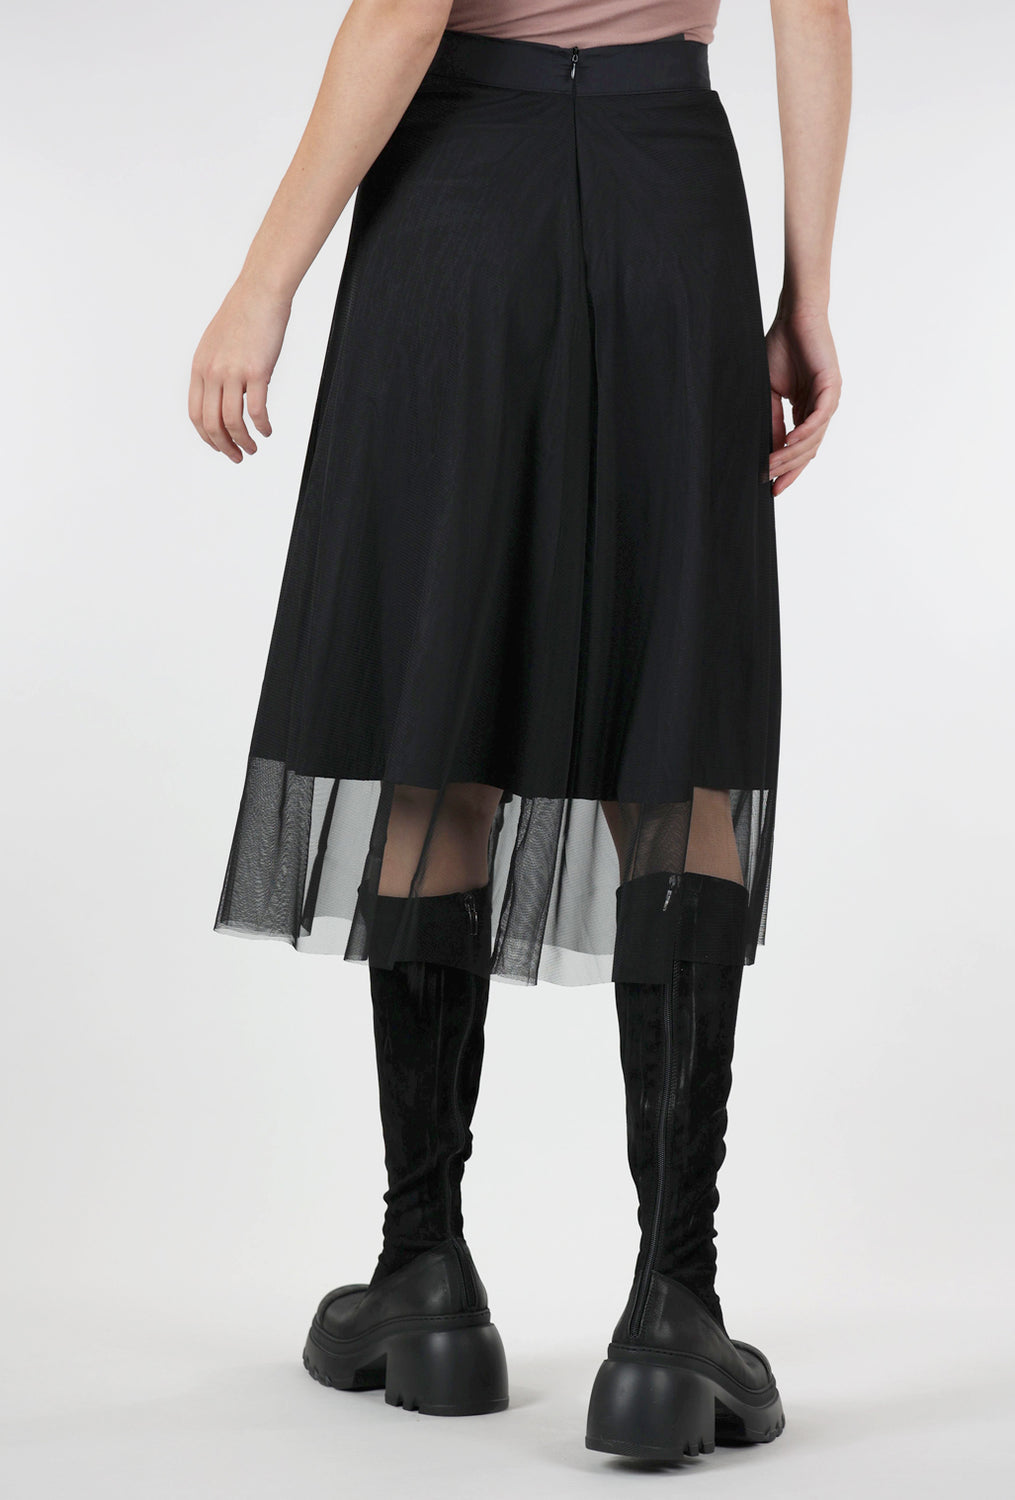 Kozan Asia Skirt, Phantom 